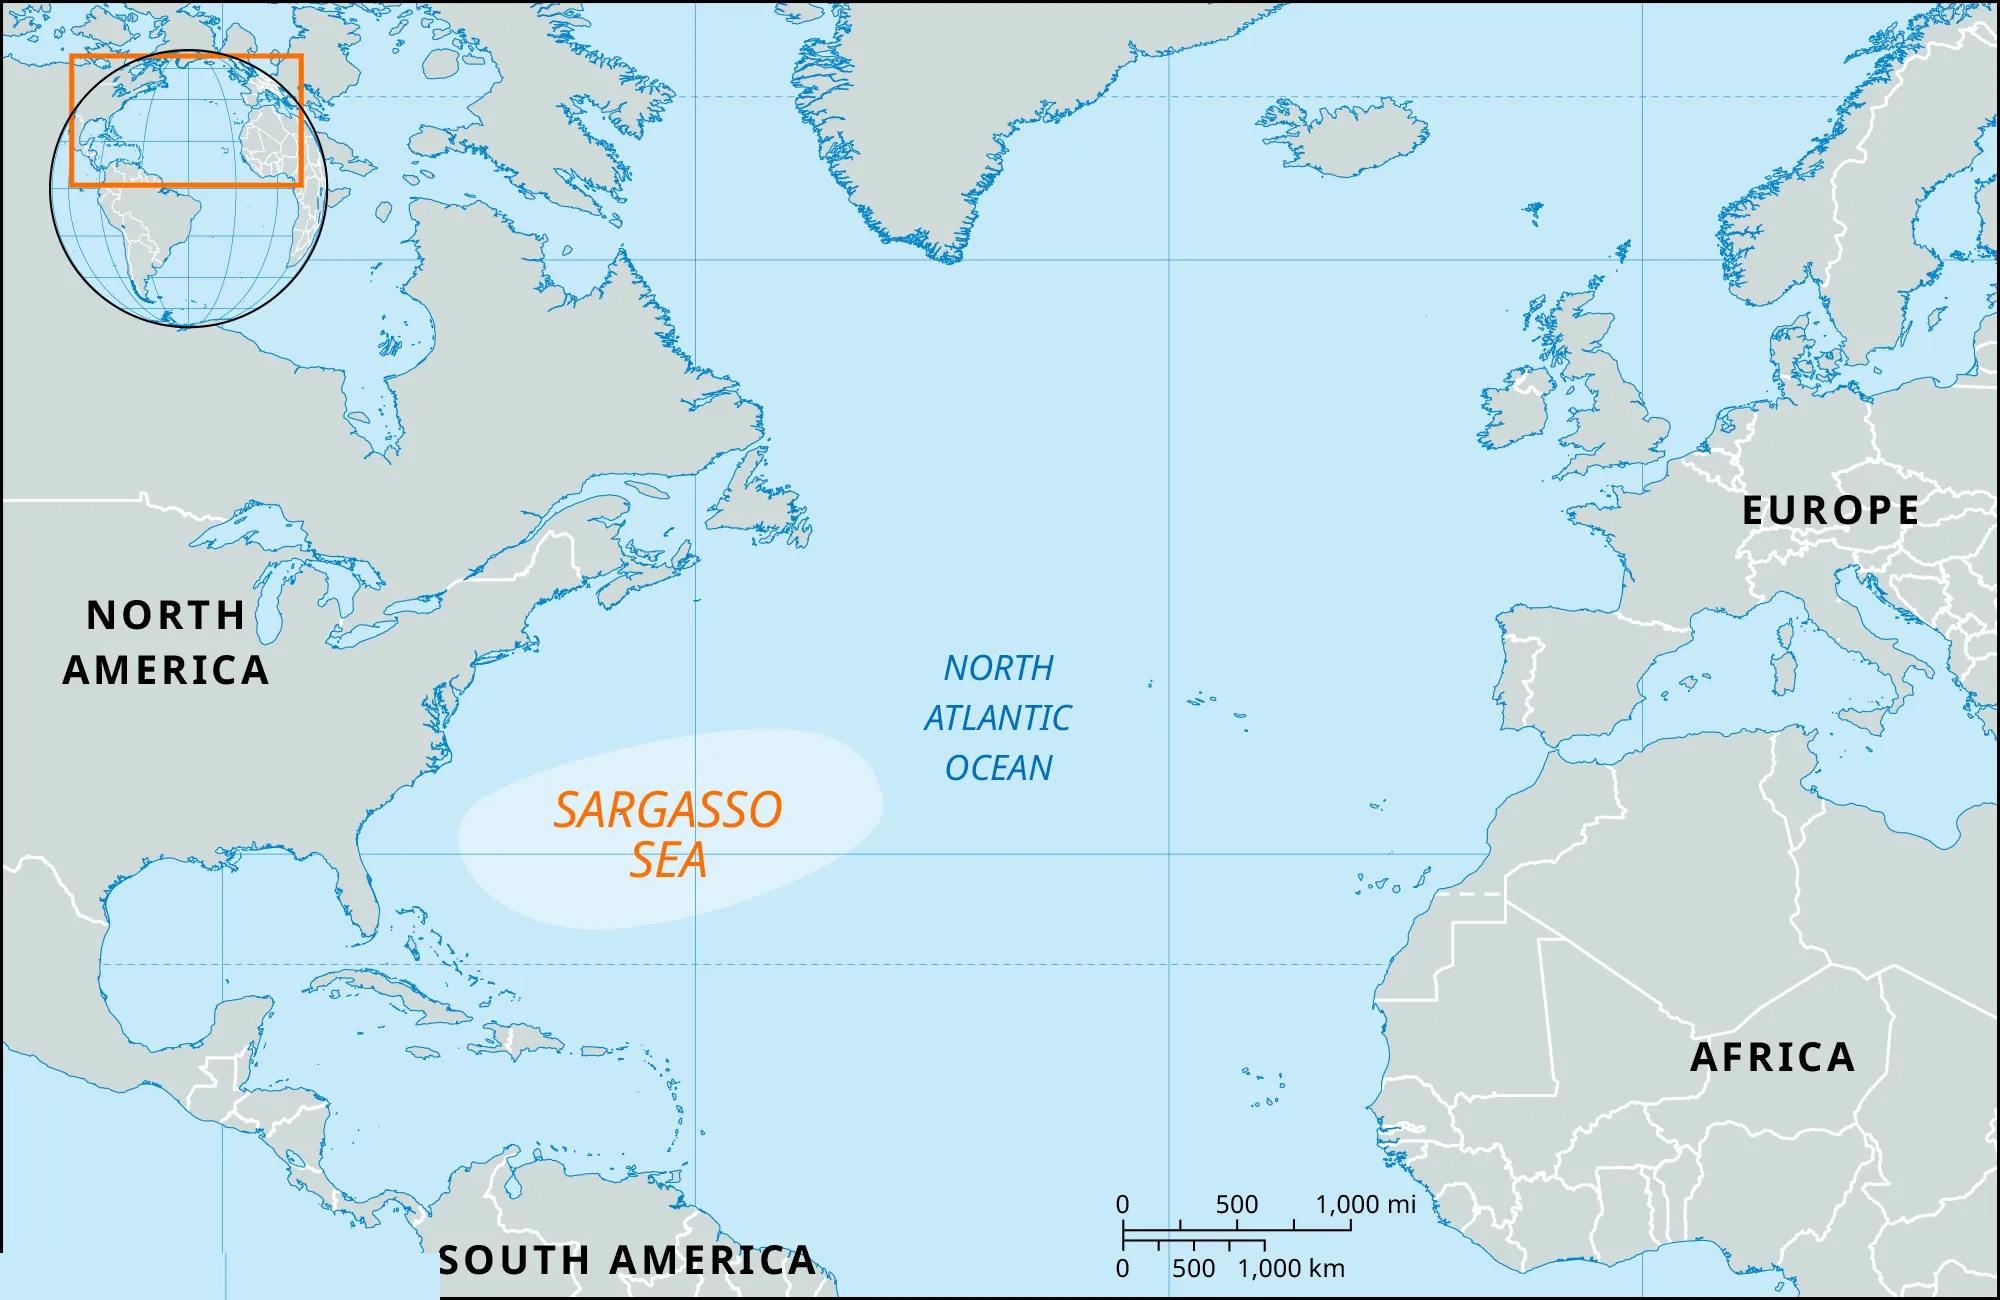 Sargasso Sea